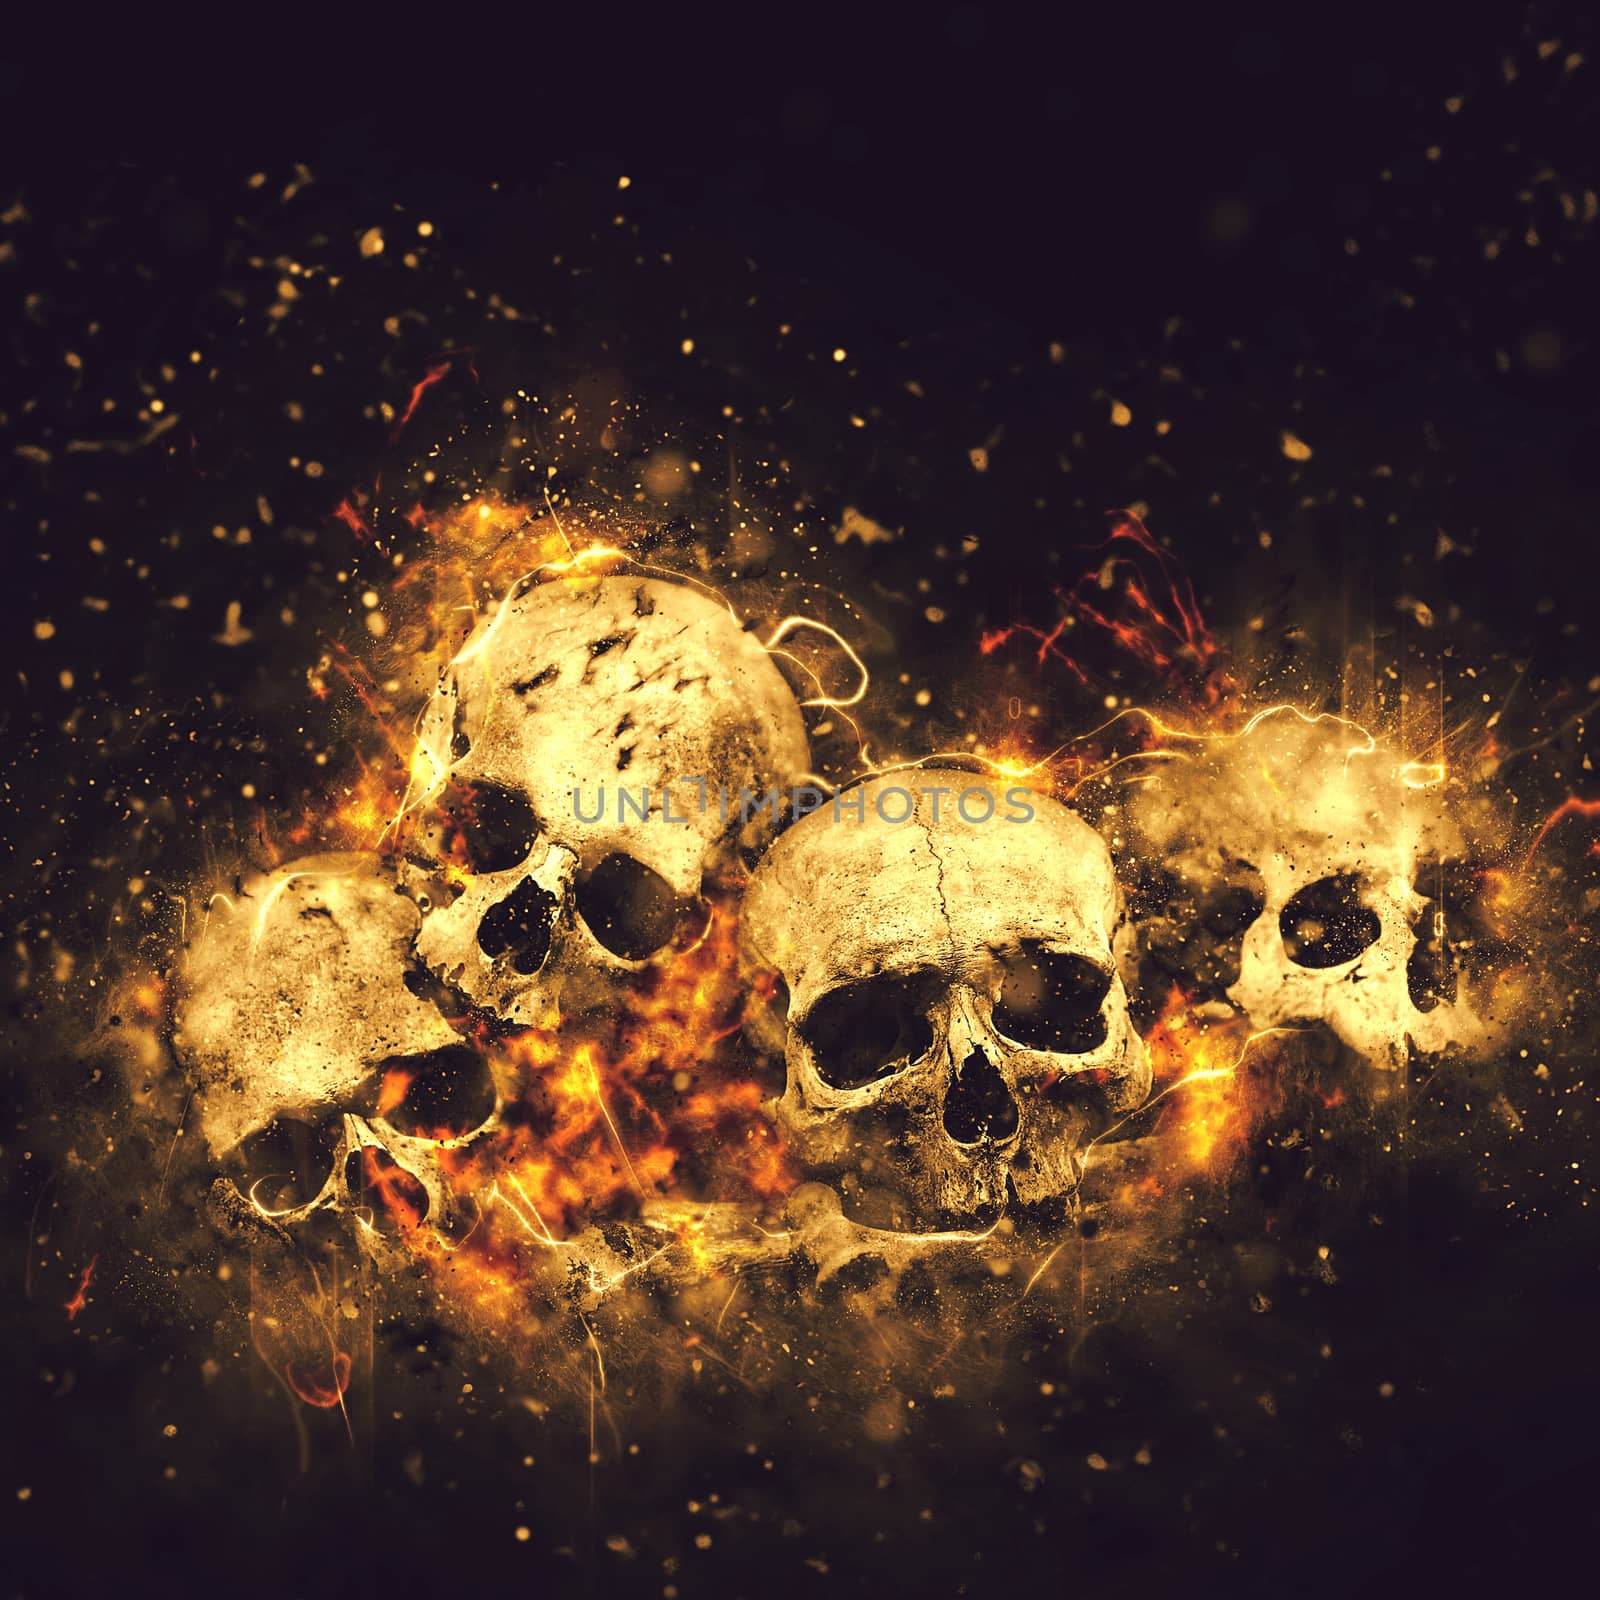 Skulls and Bones by stevanovicigor